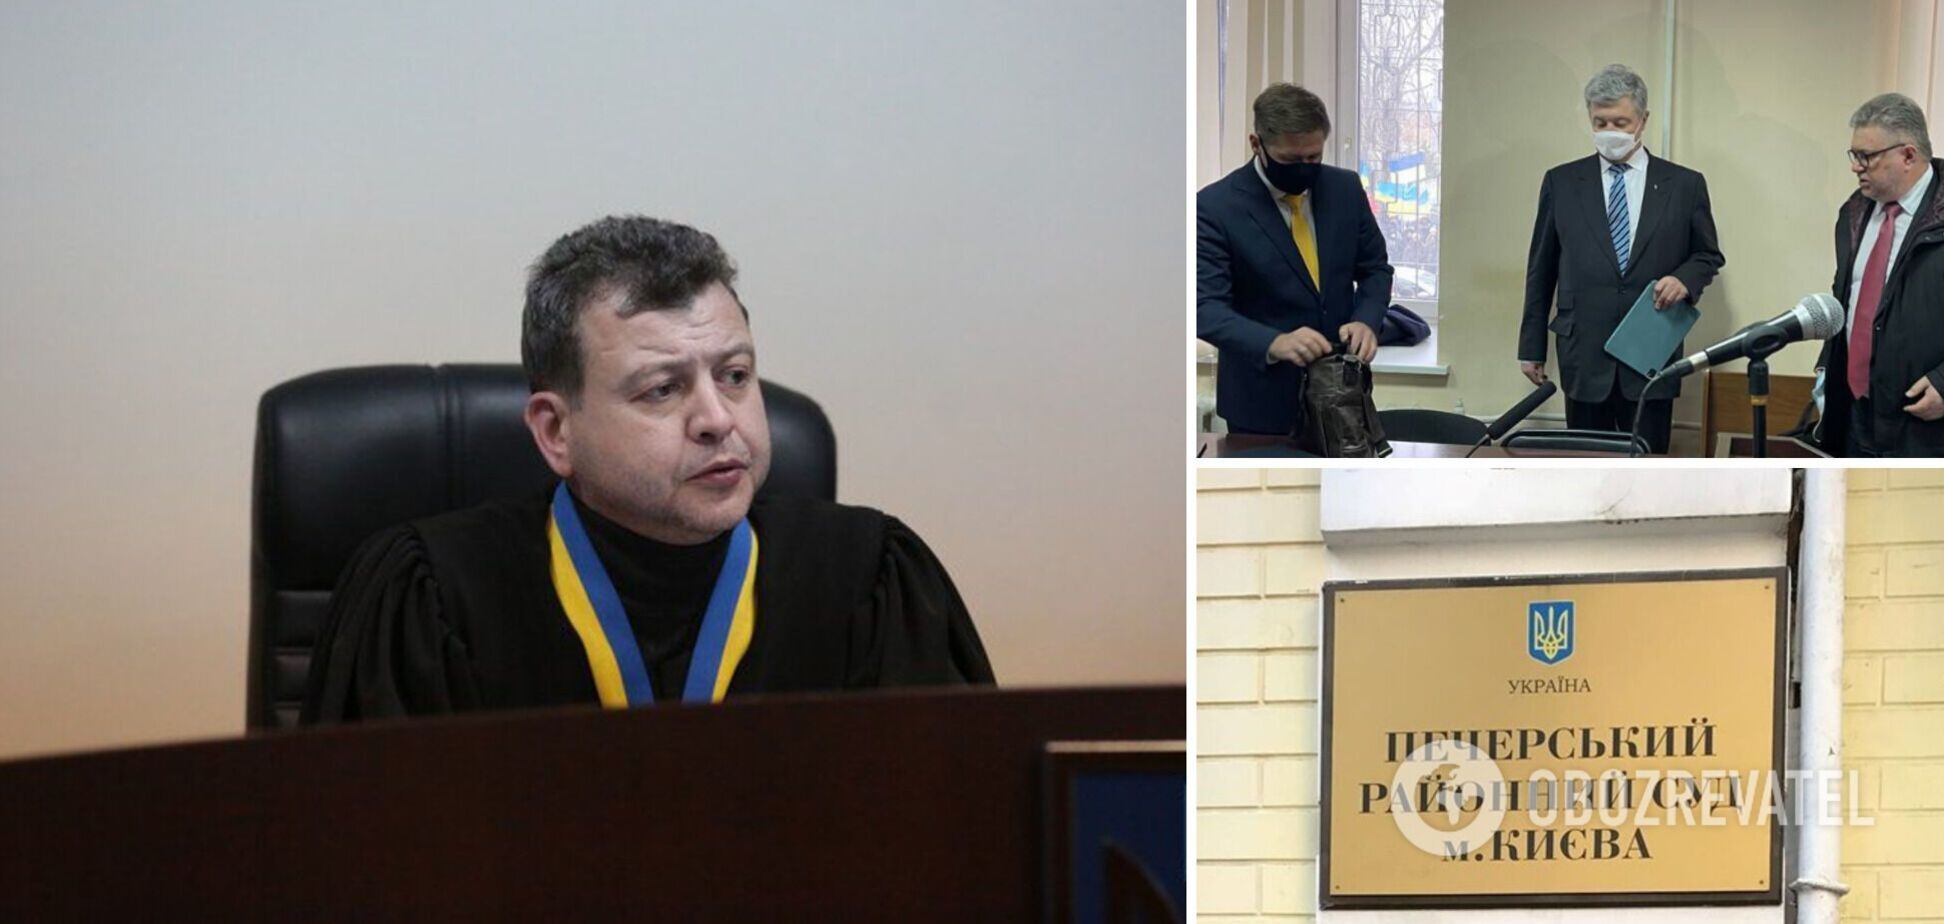 Судье Соколову, избирающего меру пресечения Порошенко, внезапно стало плохо и вызвали медиков, – Турчинов